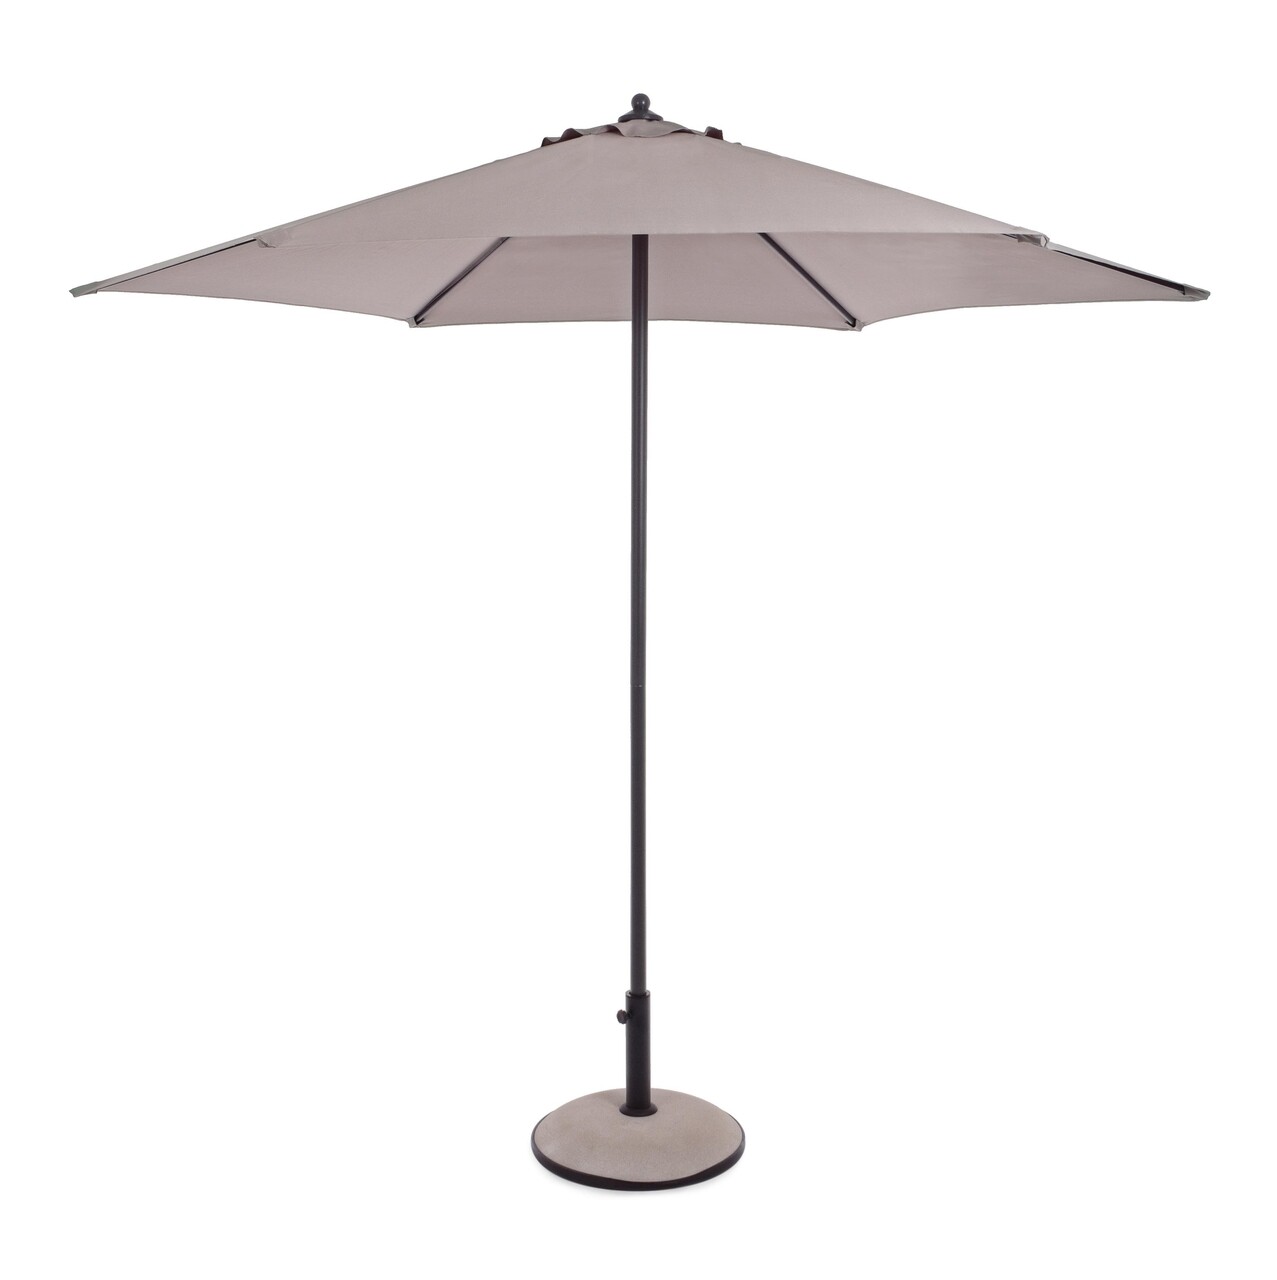 Delfi Terasz/kerti napernyő, Bizzotto, Ø270 cm, oszlop Ø38 mm, acél/poliészter, szürke/grézs